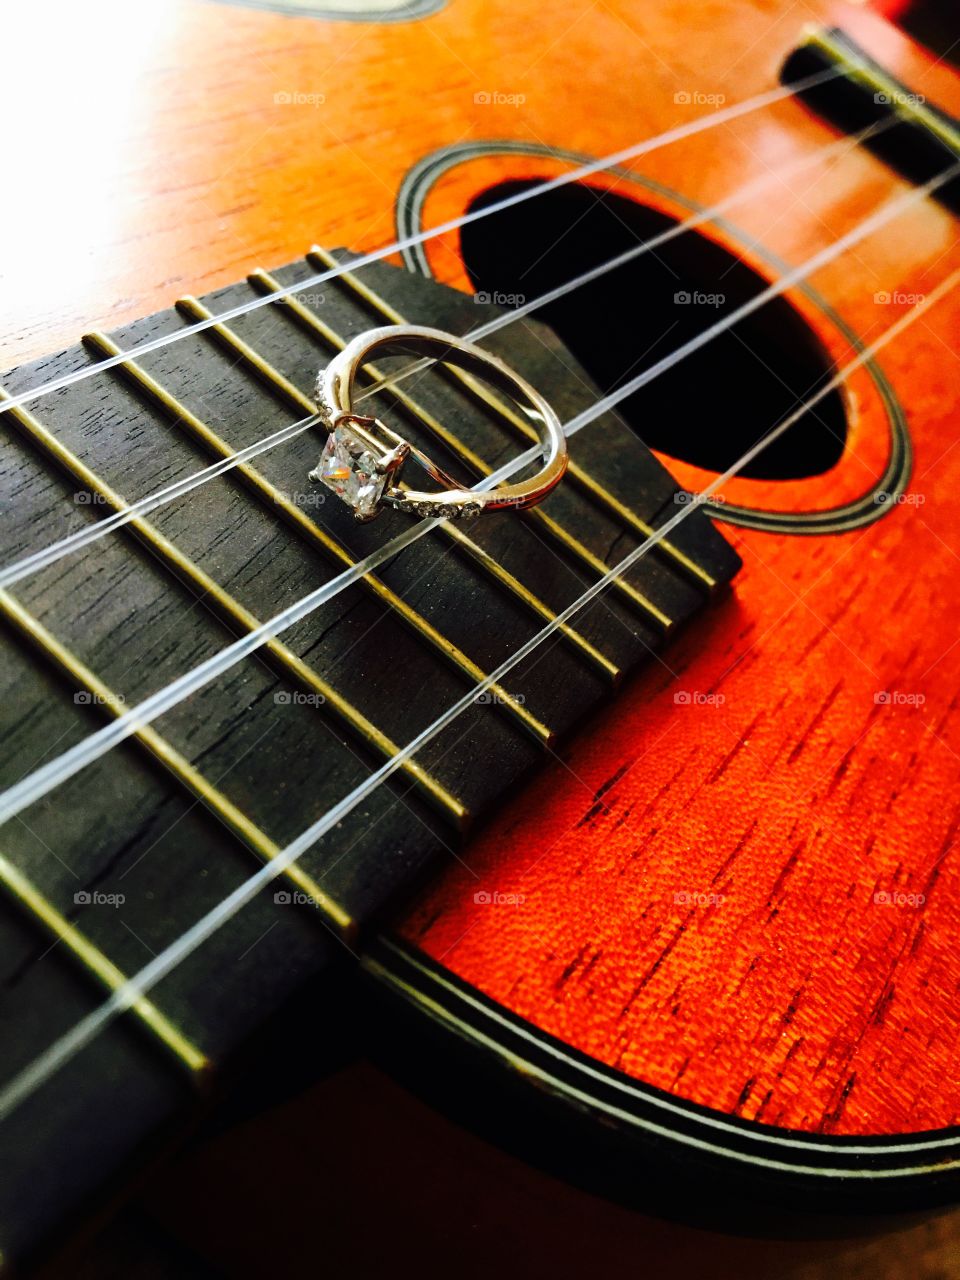 Engagement ring on a ukulele